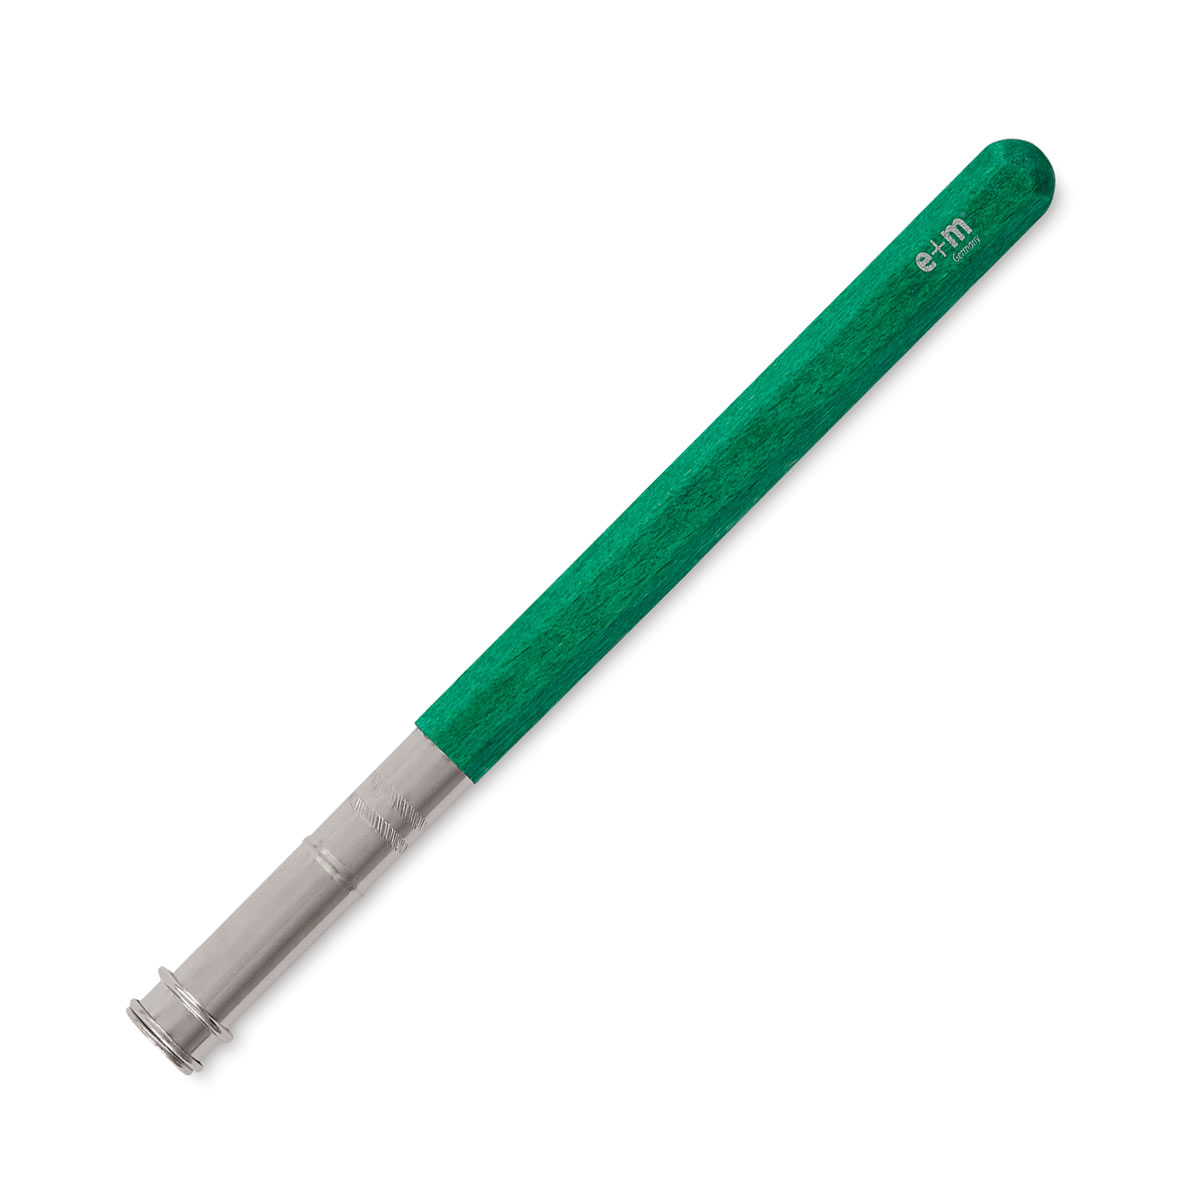 E+M Peanpole Pencil Extender - Walnut